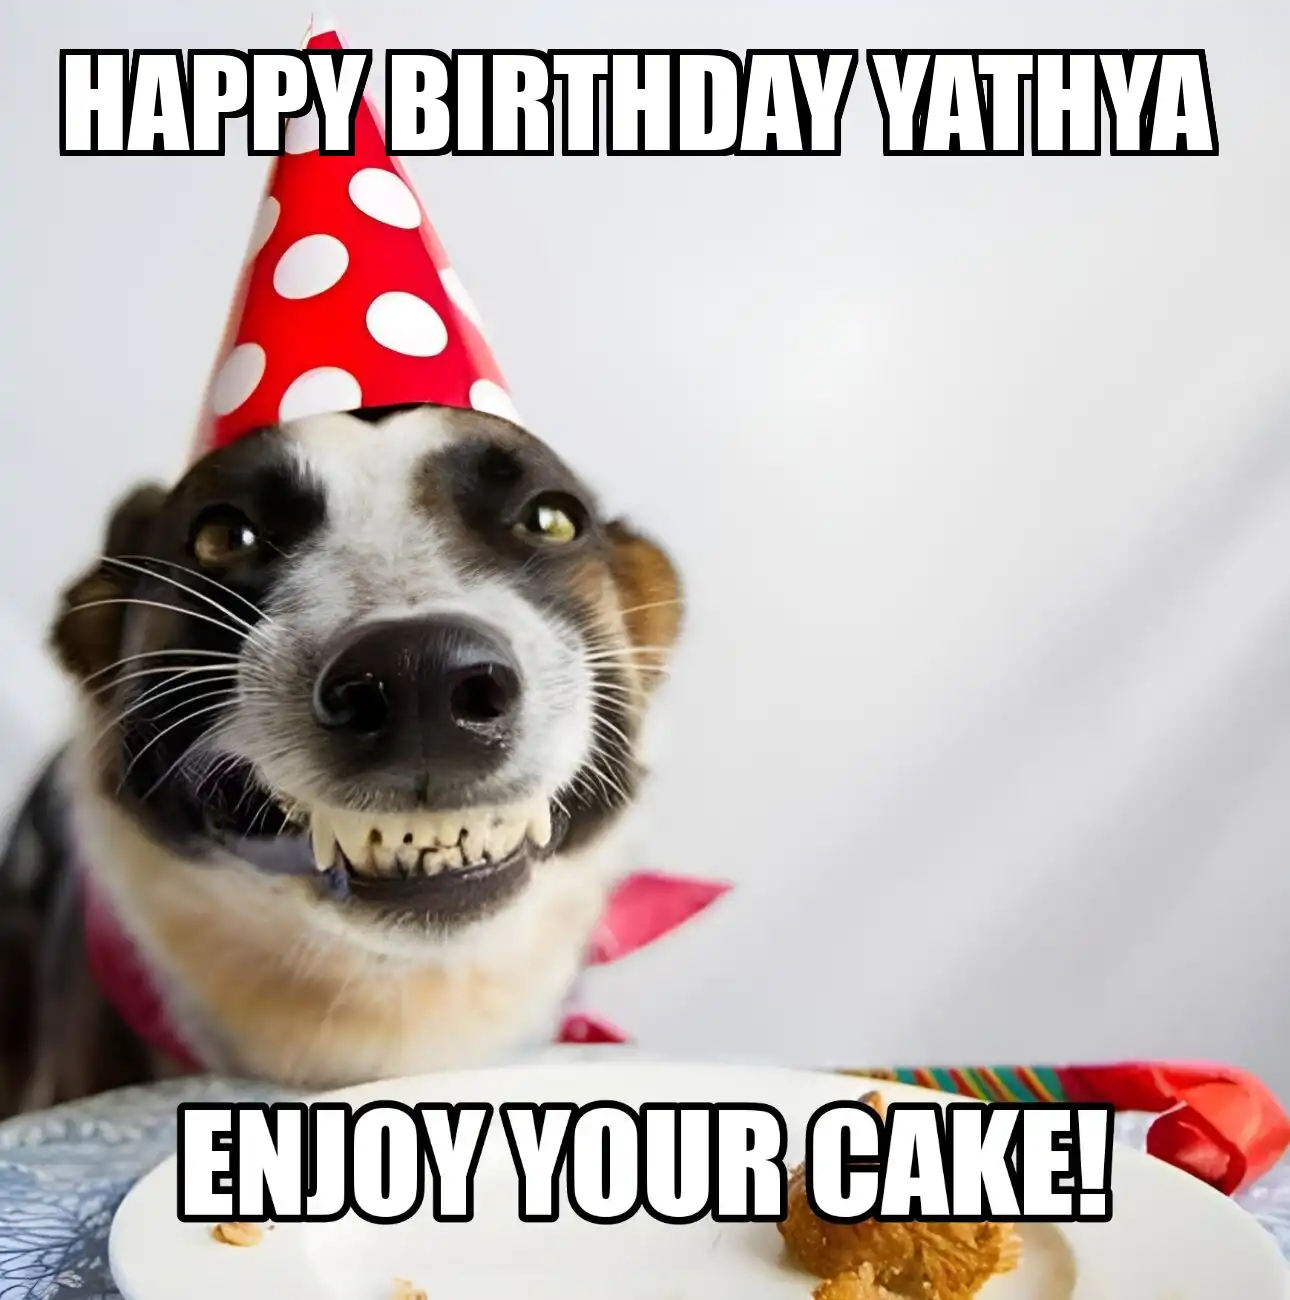 Happy Birthday Yathya Enjoy Your Cake Dog Meme